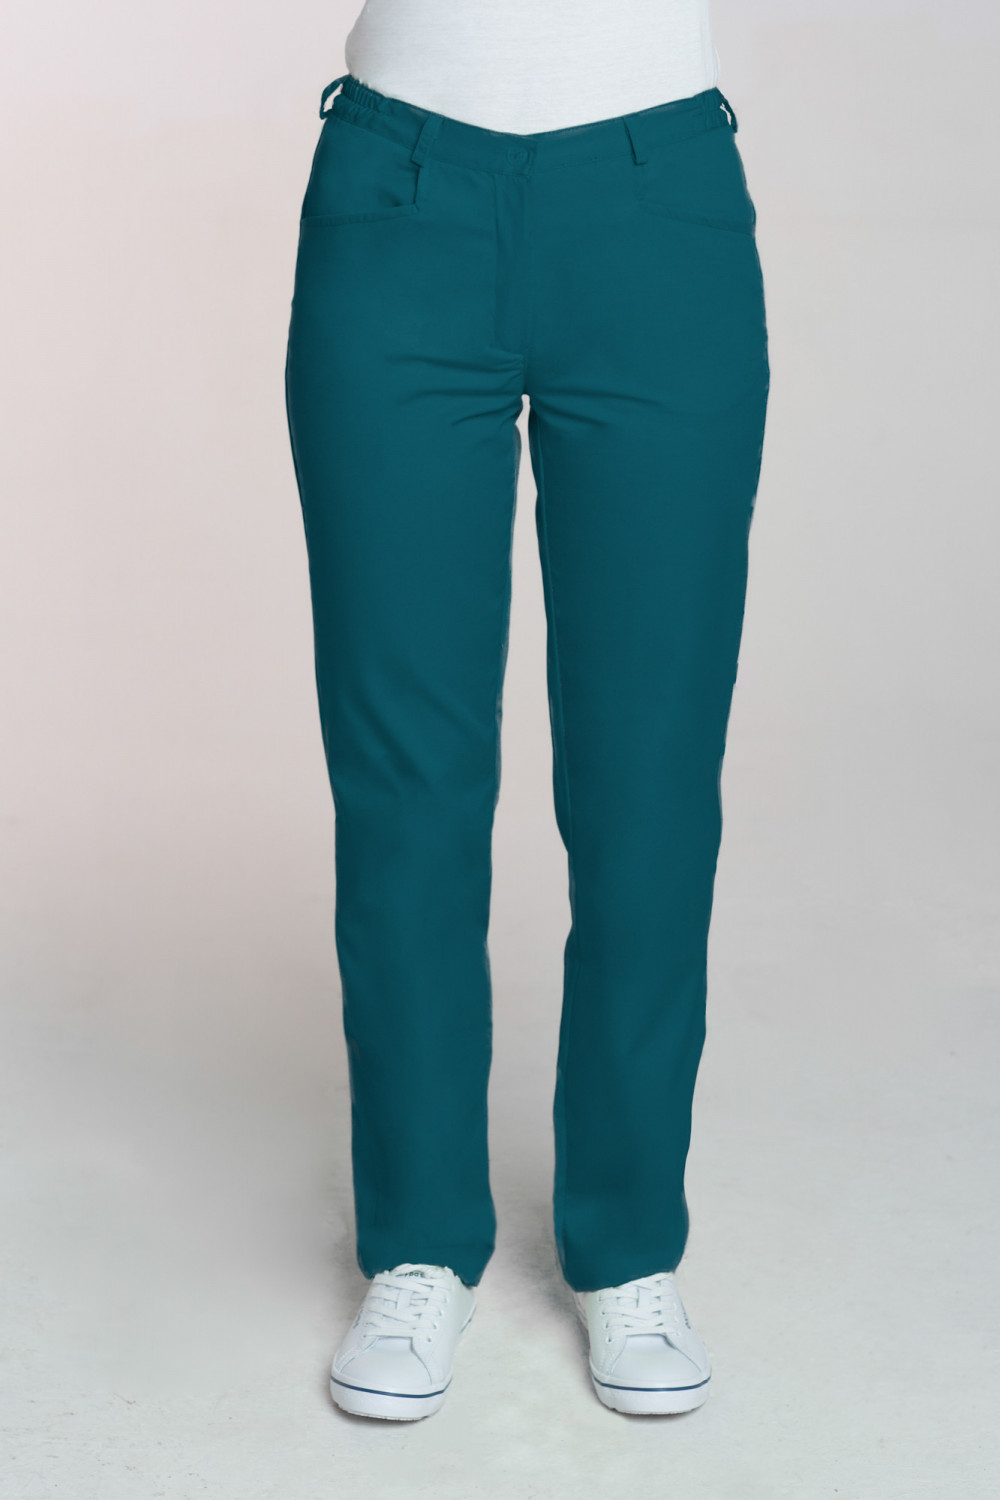 M-348 Spodnie damskie medyczne do fartucha kolor ciemny zielony